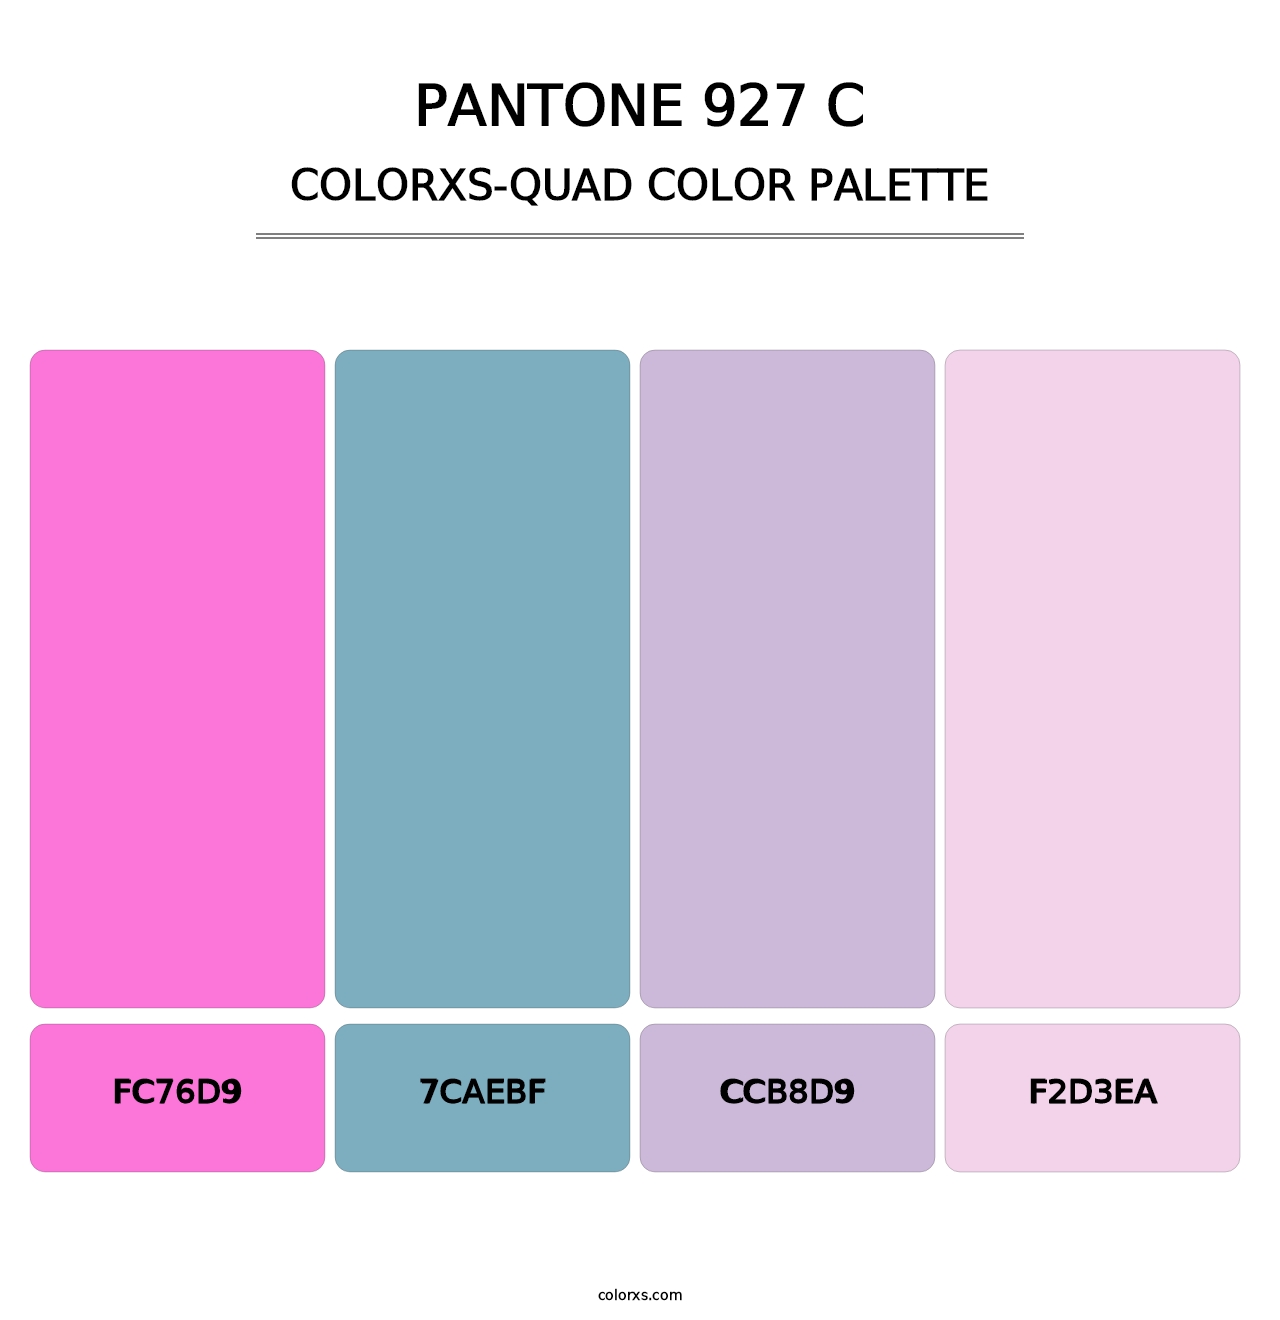 PANTONE 927 C - Colorxs Quad Palette